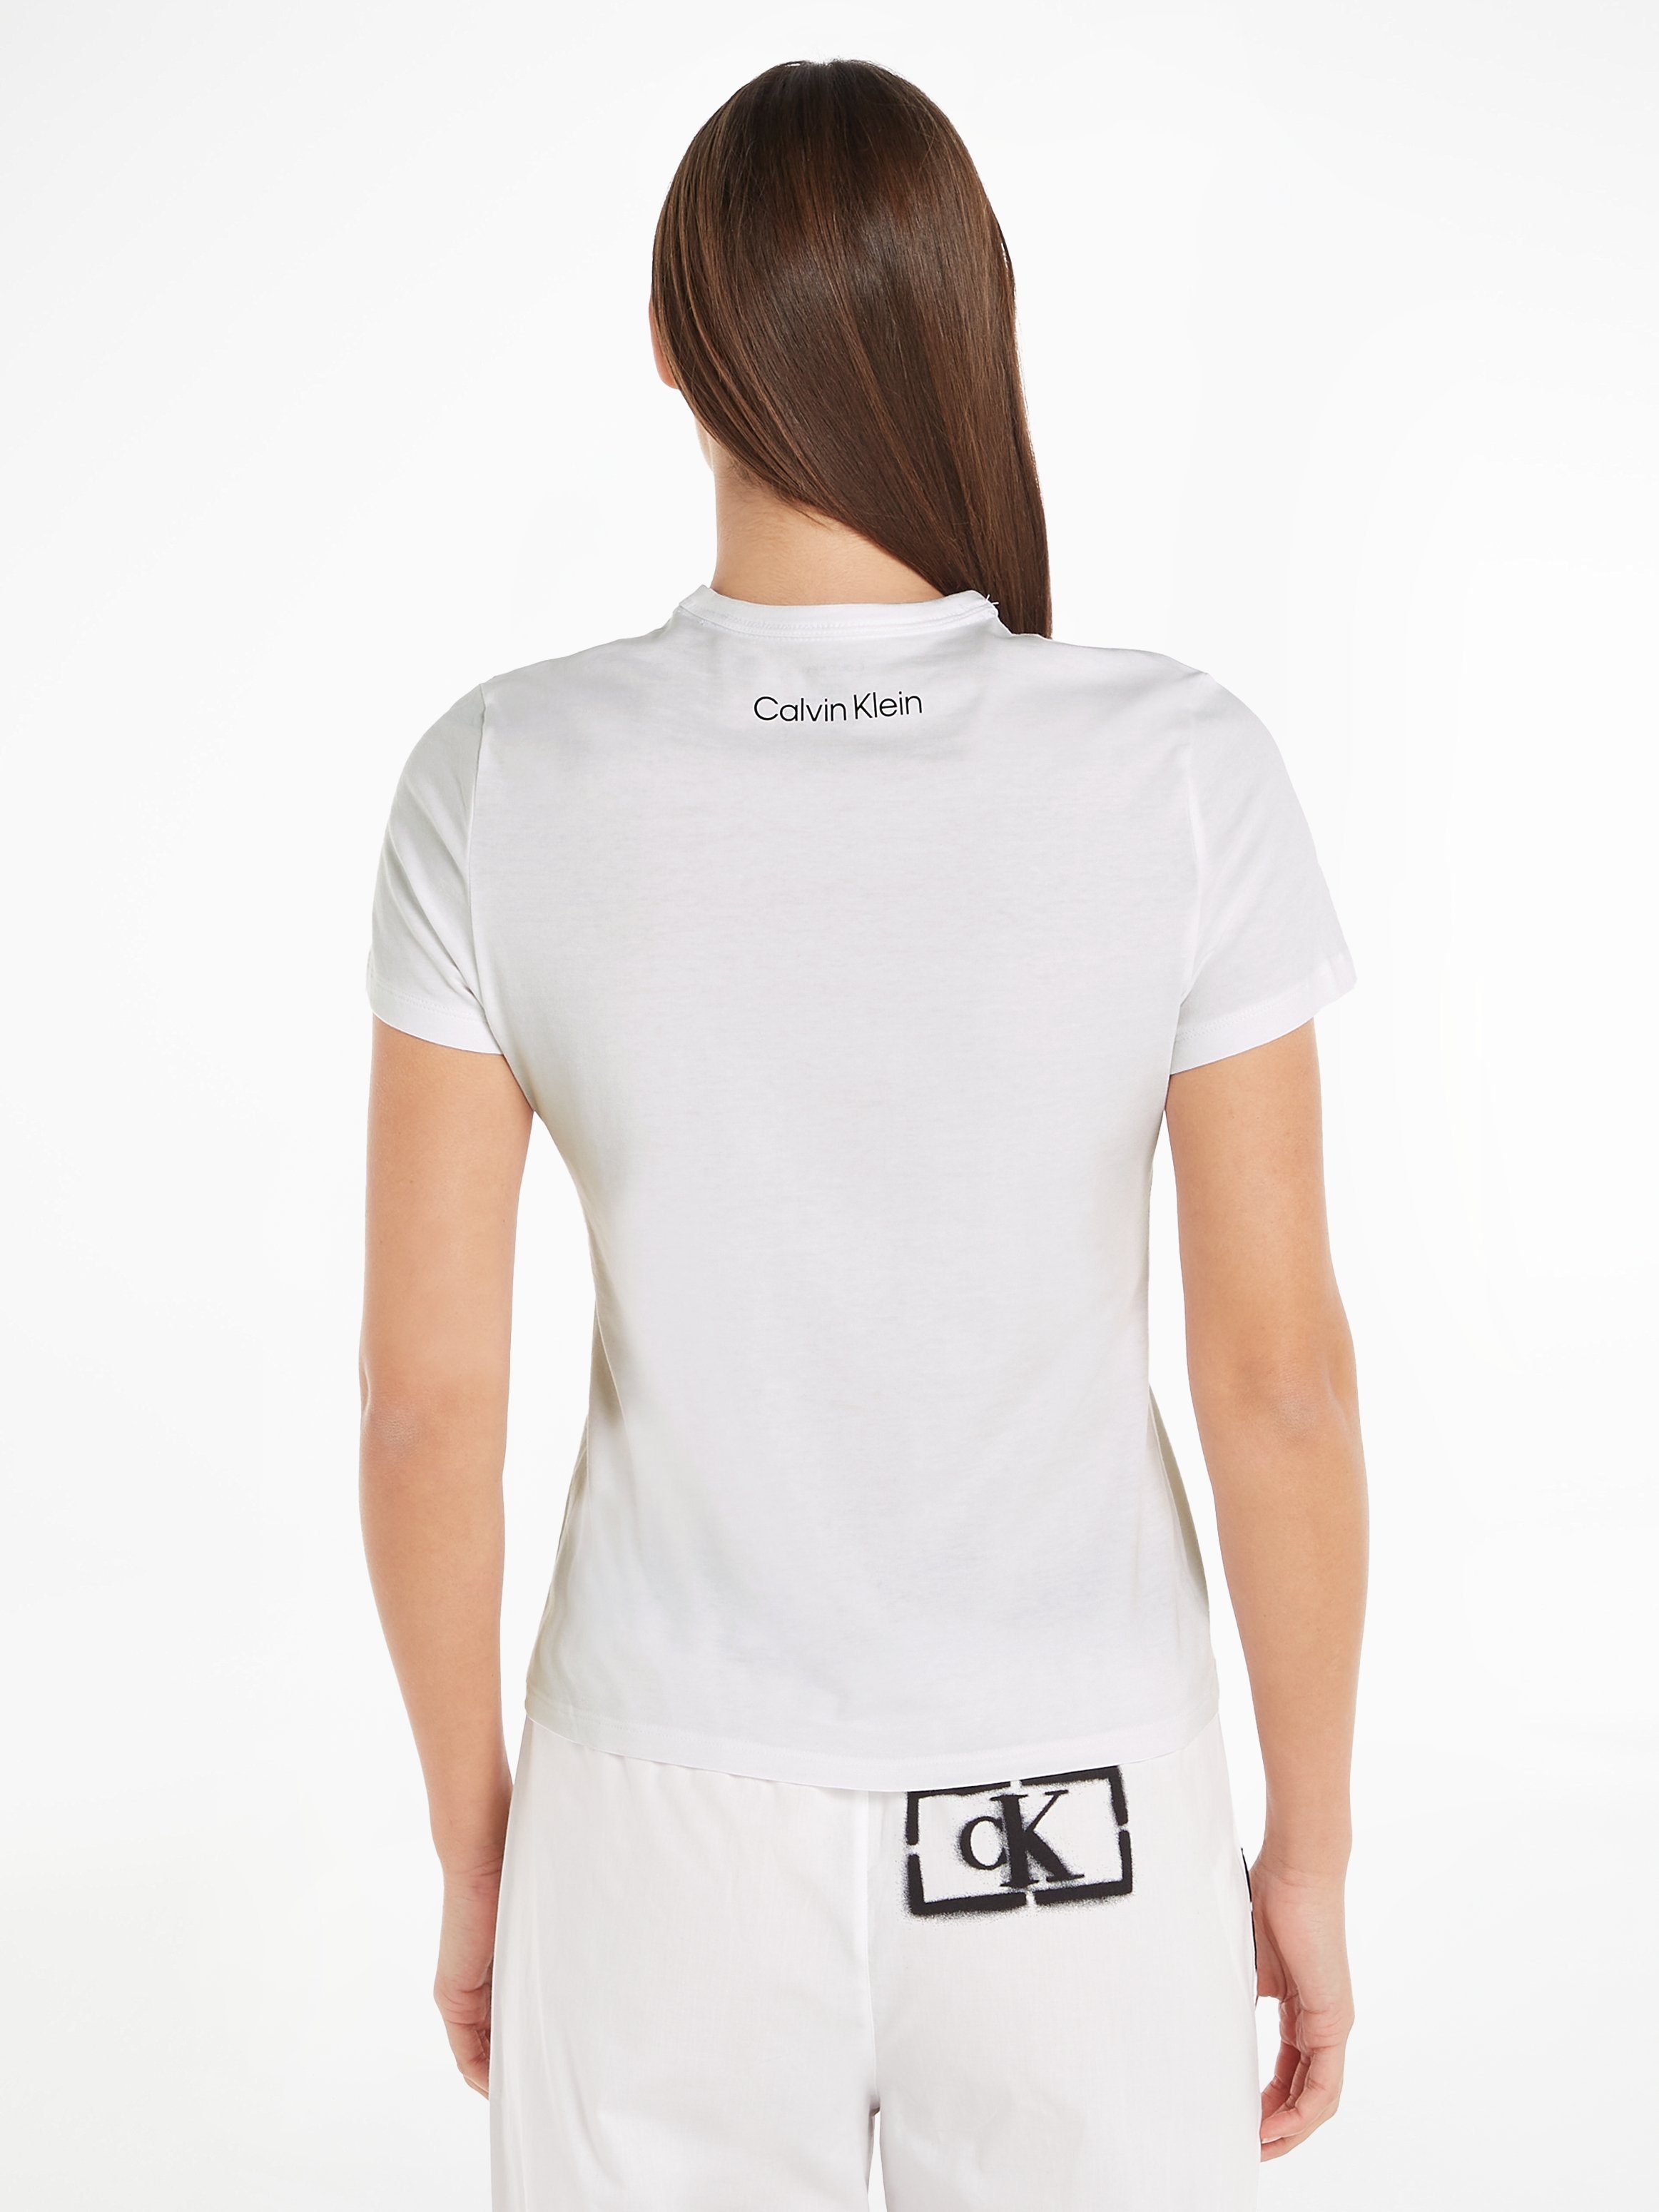 Calvin Klein Underwear S/S CREW Kurzarmshirt NECK WHITE